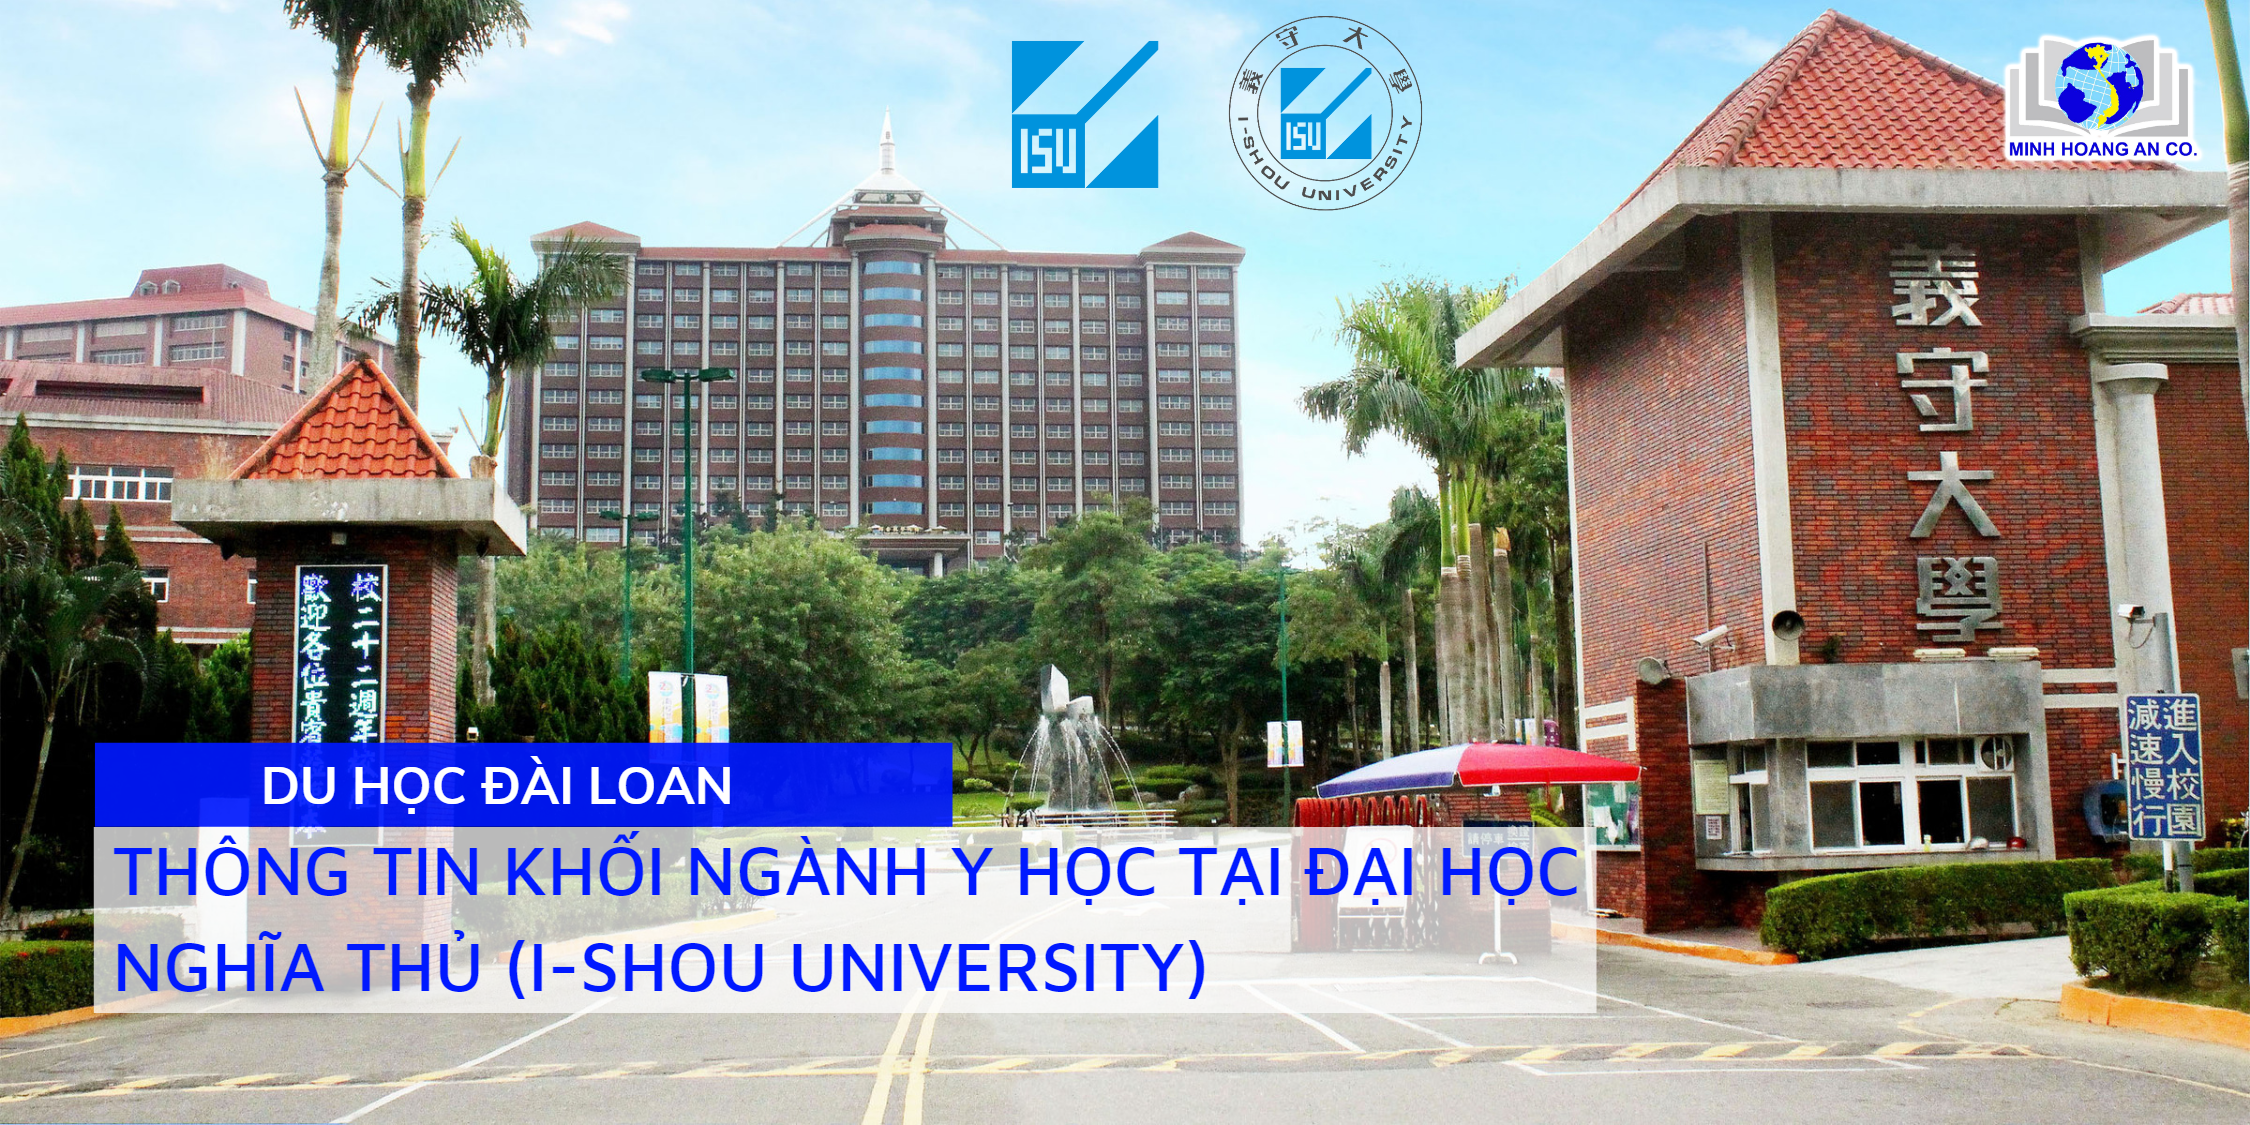 Thông tin tuyển sinh khối ngành Y tại Đại học Nghĩa Thủ (I-Shou University) 1